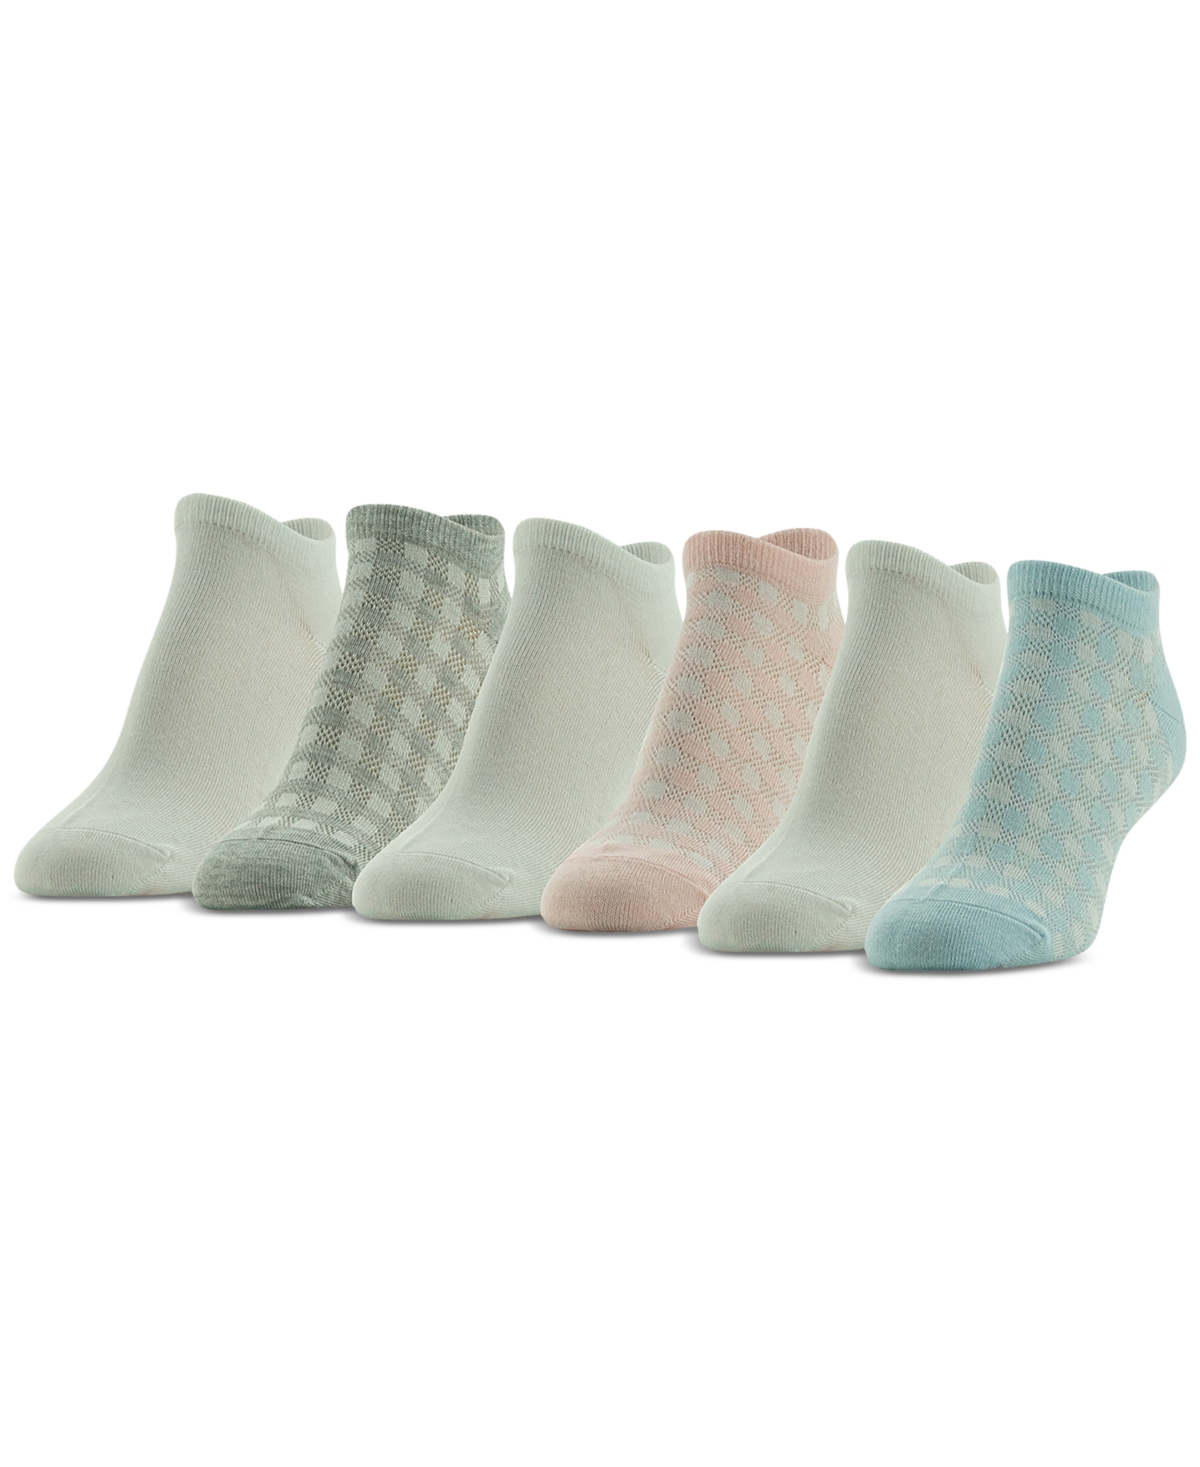 Women's 6-Pk. Gingham Liner Socks - Assorted